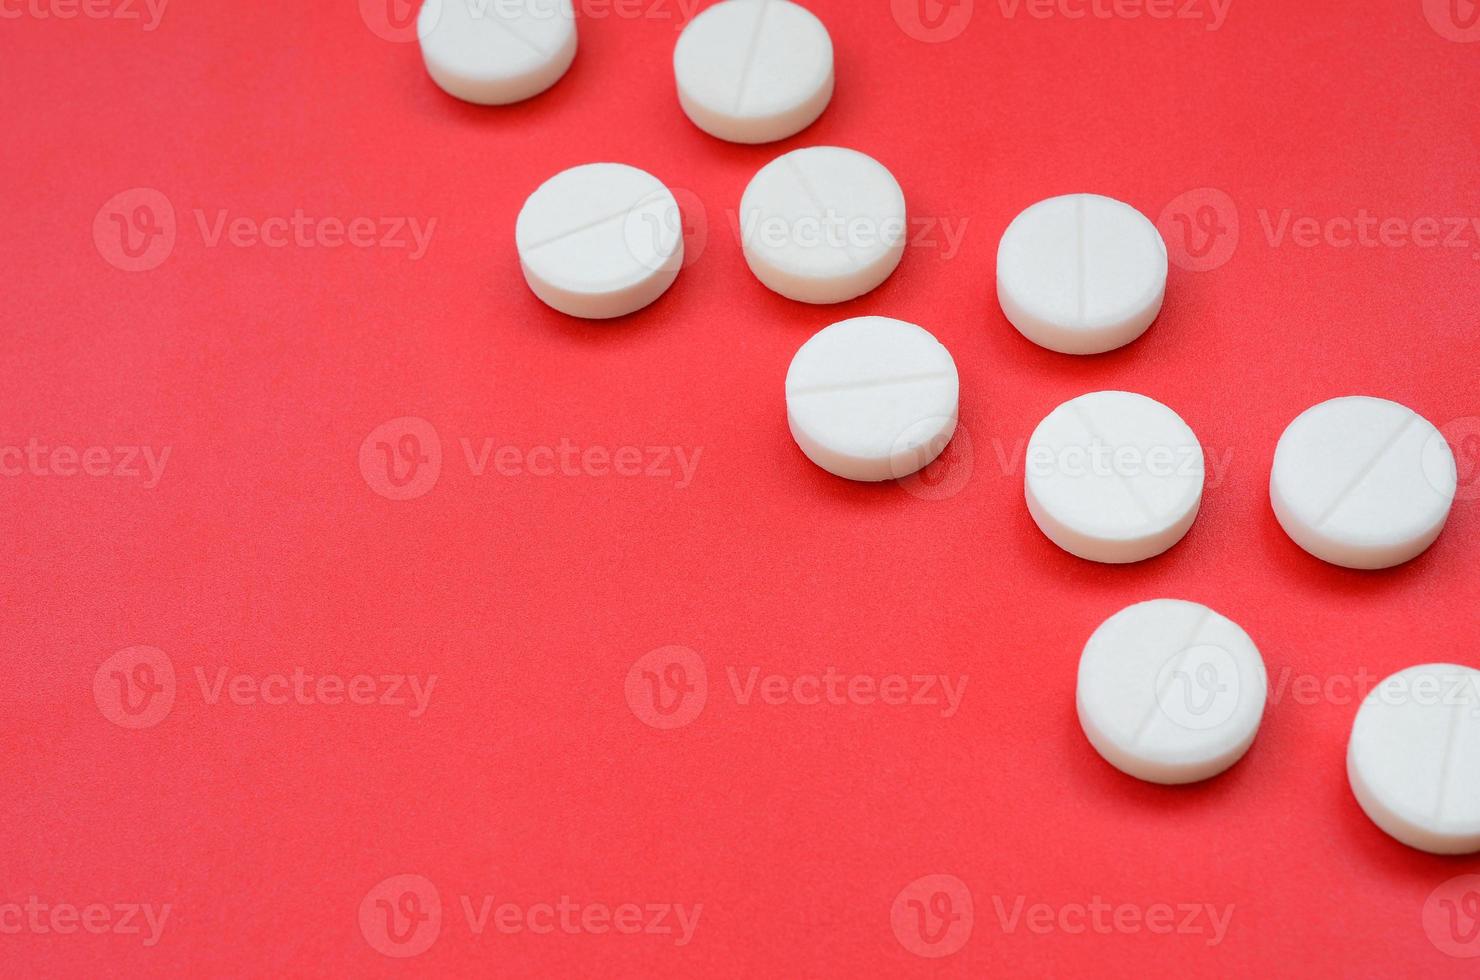 quelques comprimés blancs reposent sur une surface de fond rouge vif. image de fond sur des sujets médicaux et pharmaceutiques photo